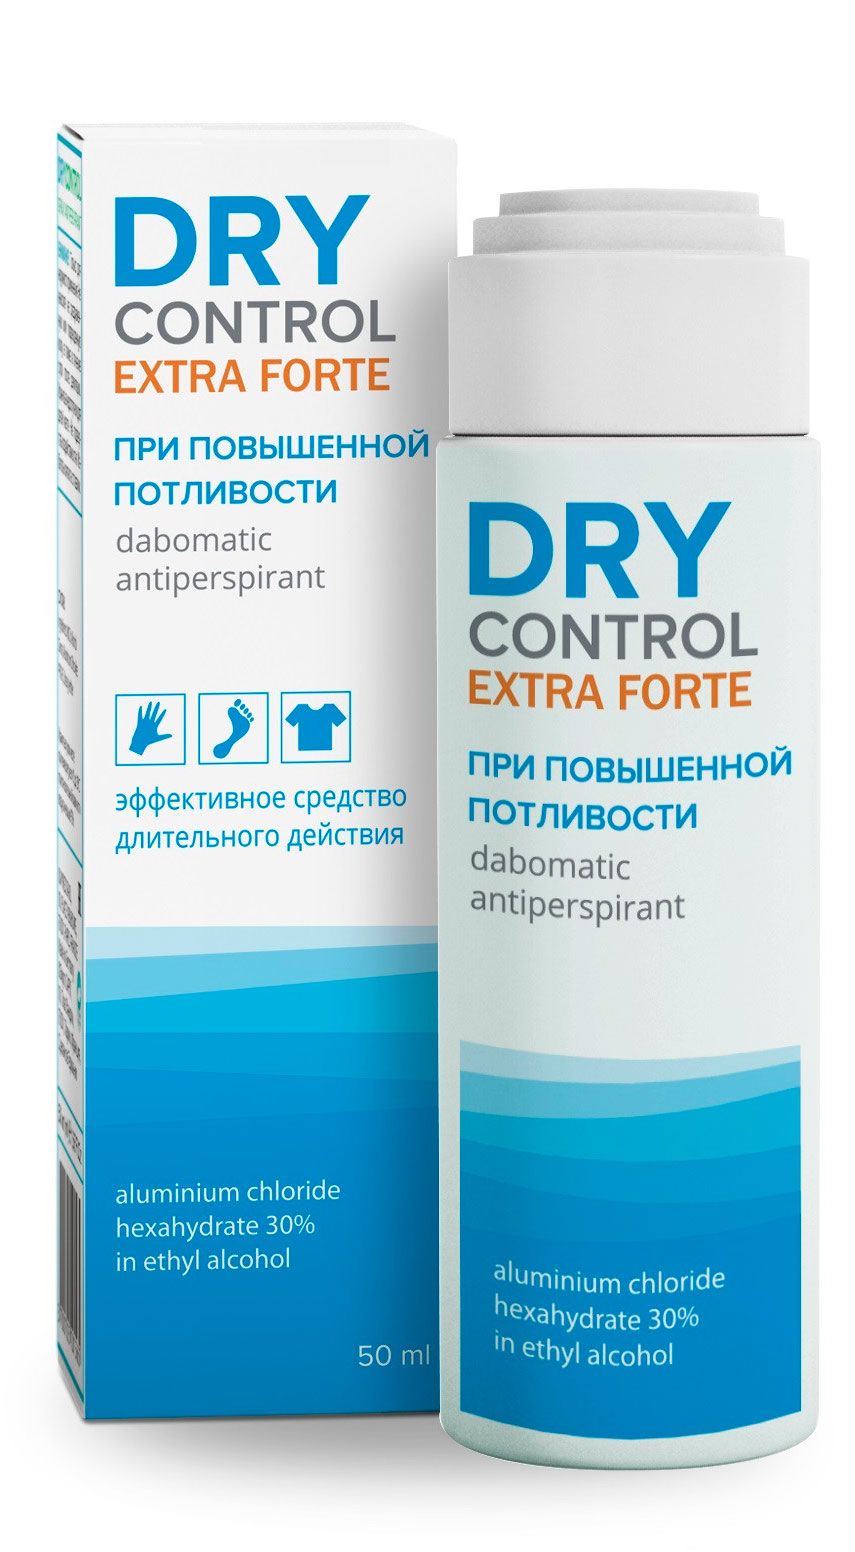 фото упаковки Dry Control Extra Forte дабоматик антиперспирант 30%